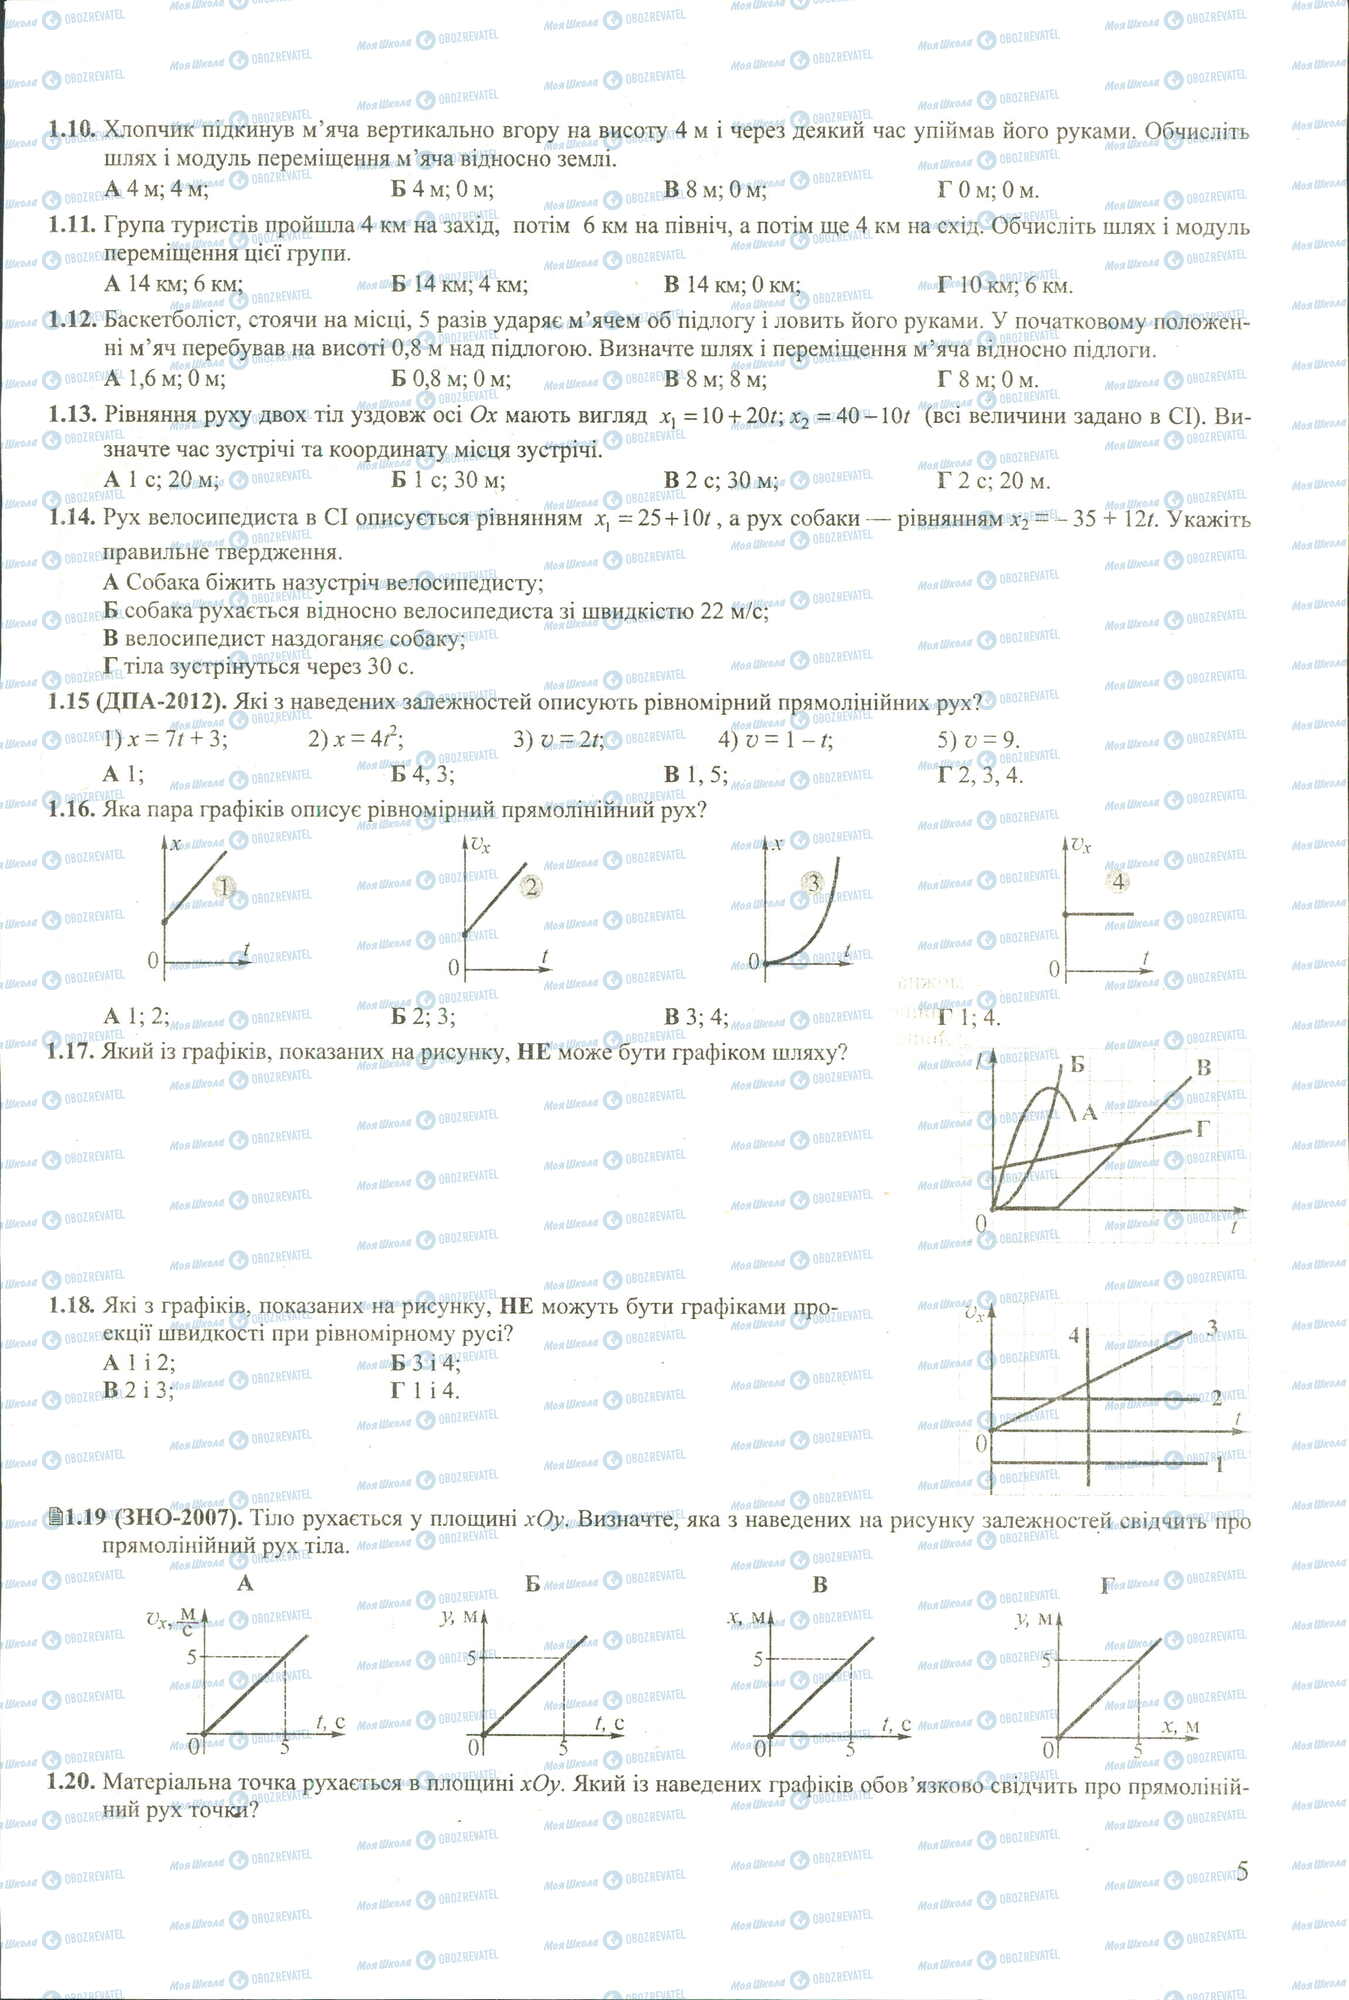 ЗНО Физика 11 класс страница 10-20